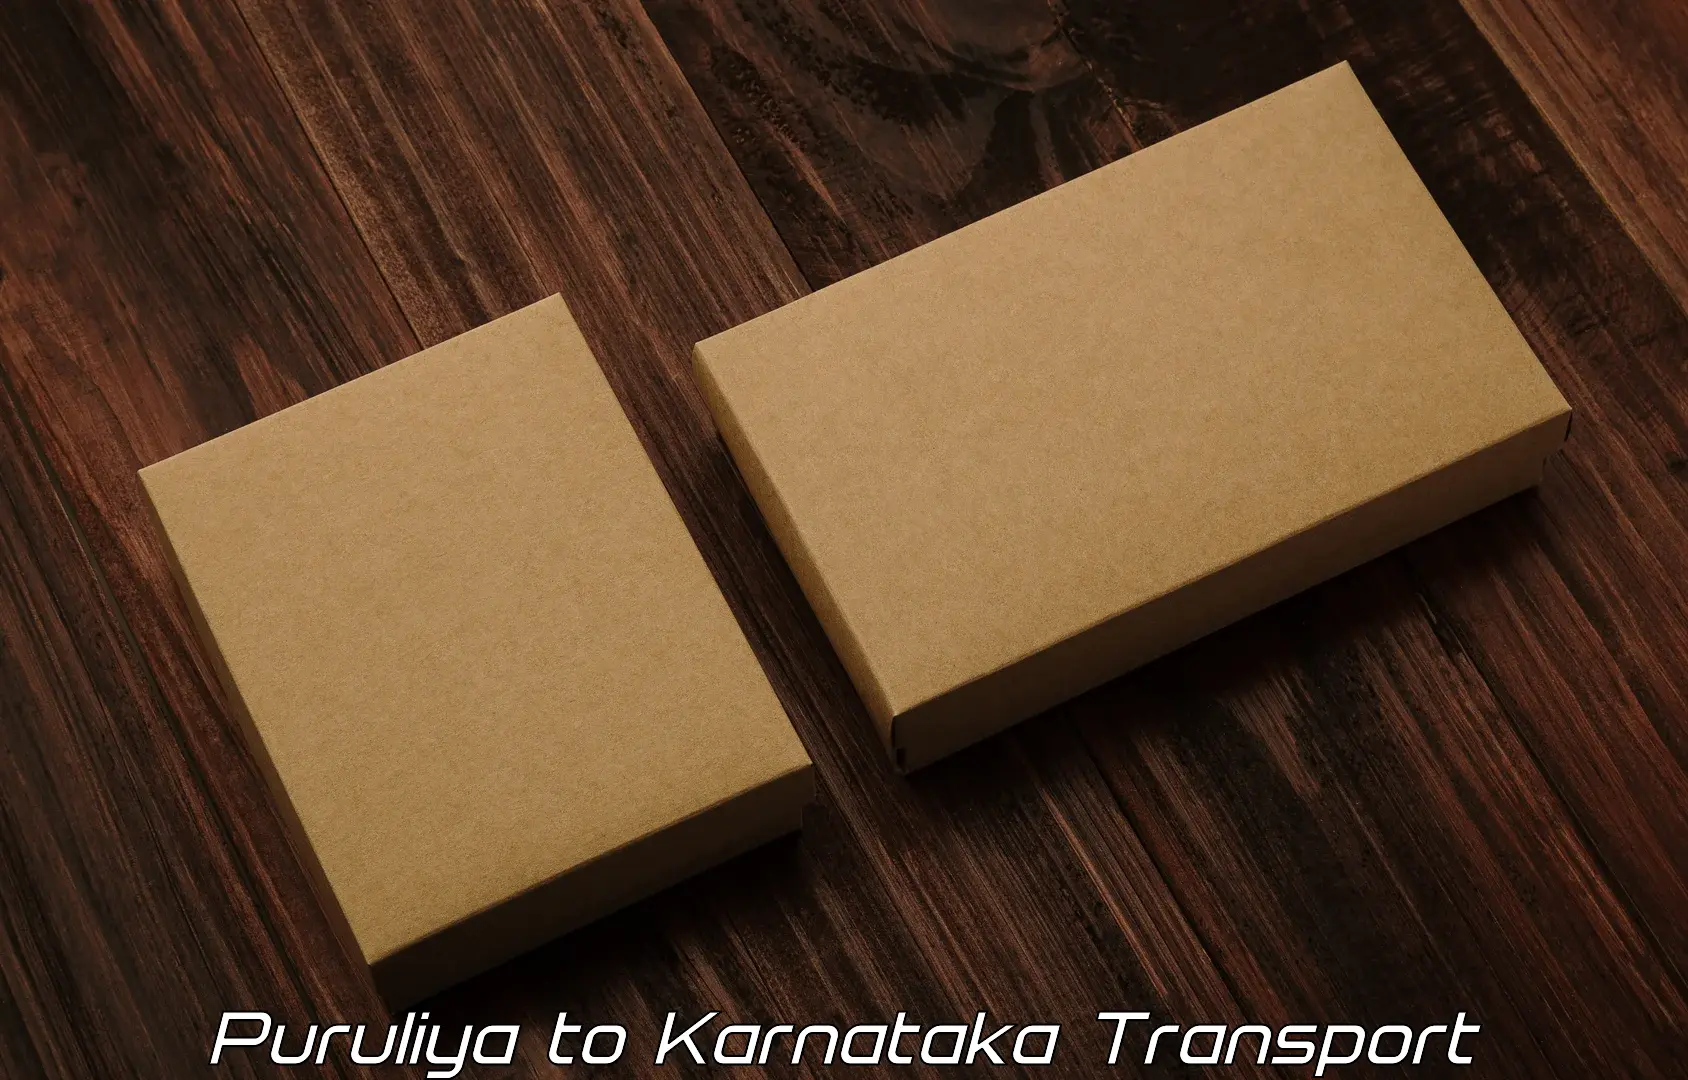 Material transport services Puruliya to Nagamangala